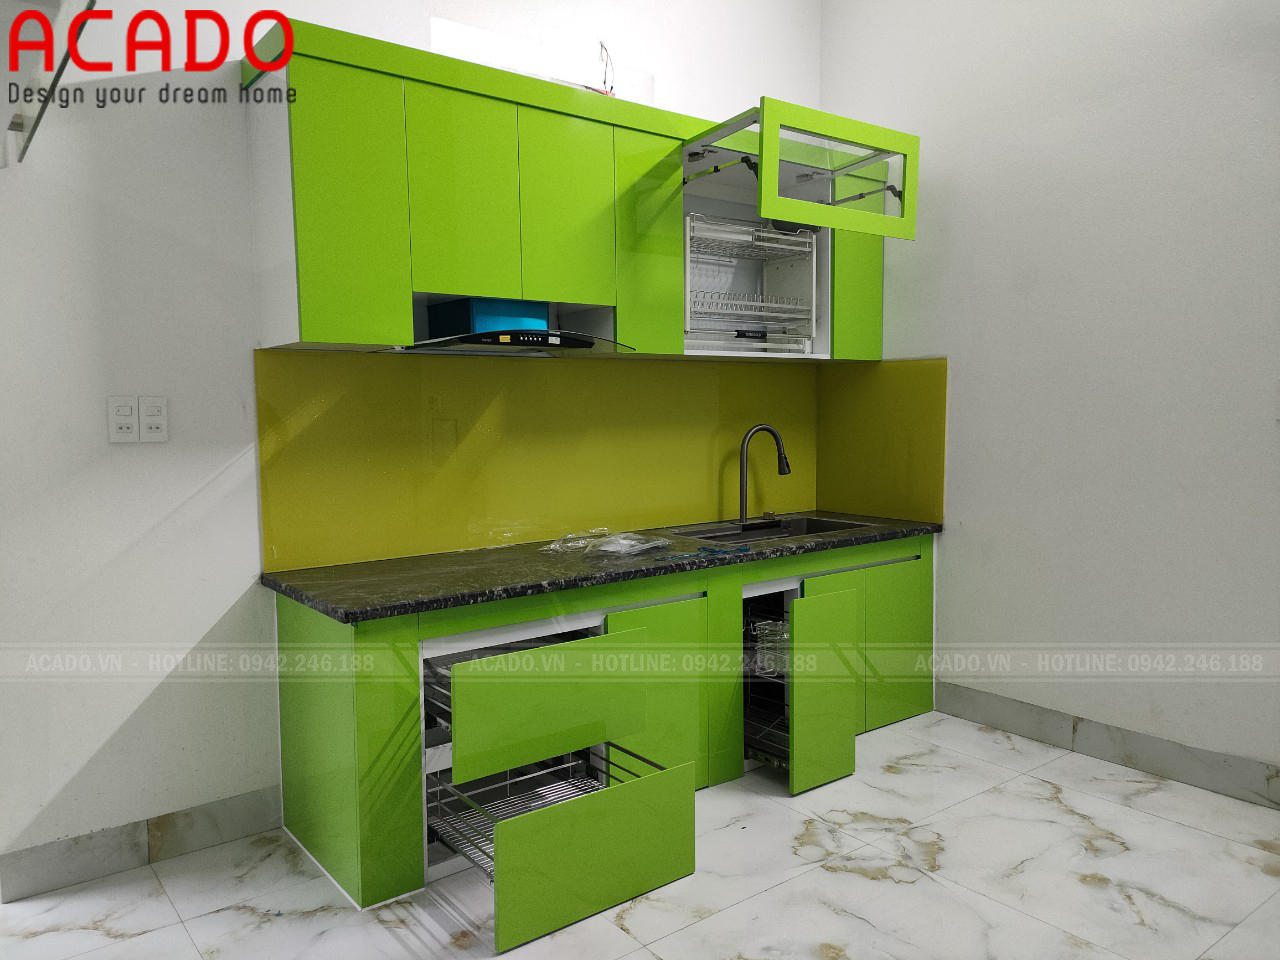 Hoàn thiện tủ bếp và ban giao công trình cho gia đình Bảo An - Thi công tủ bếp tại Phú Xuyên